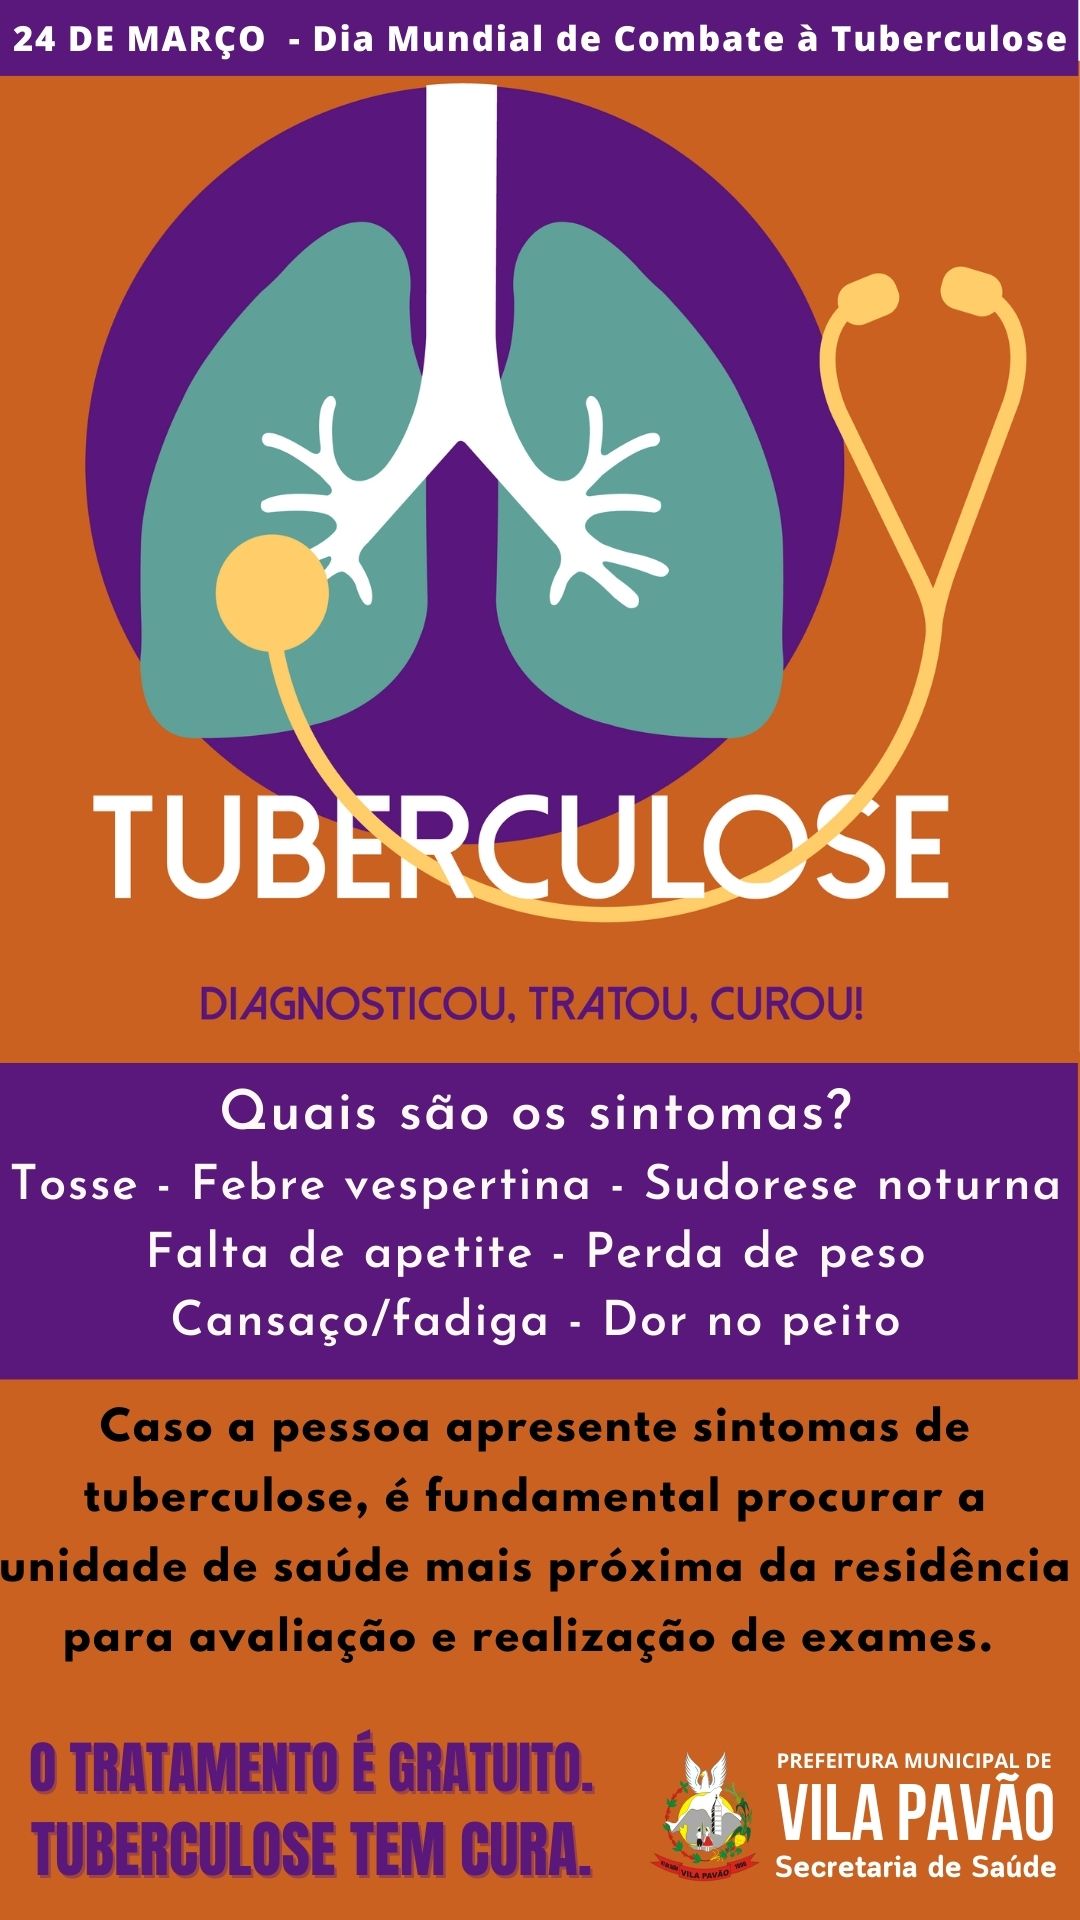 TUBERCULOSE